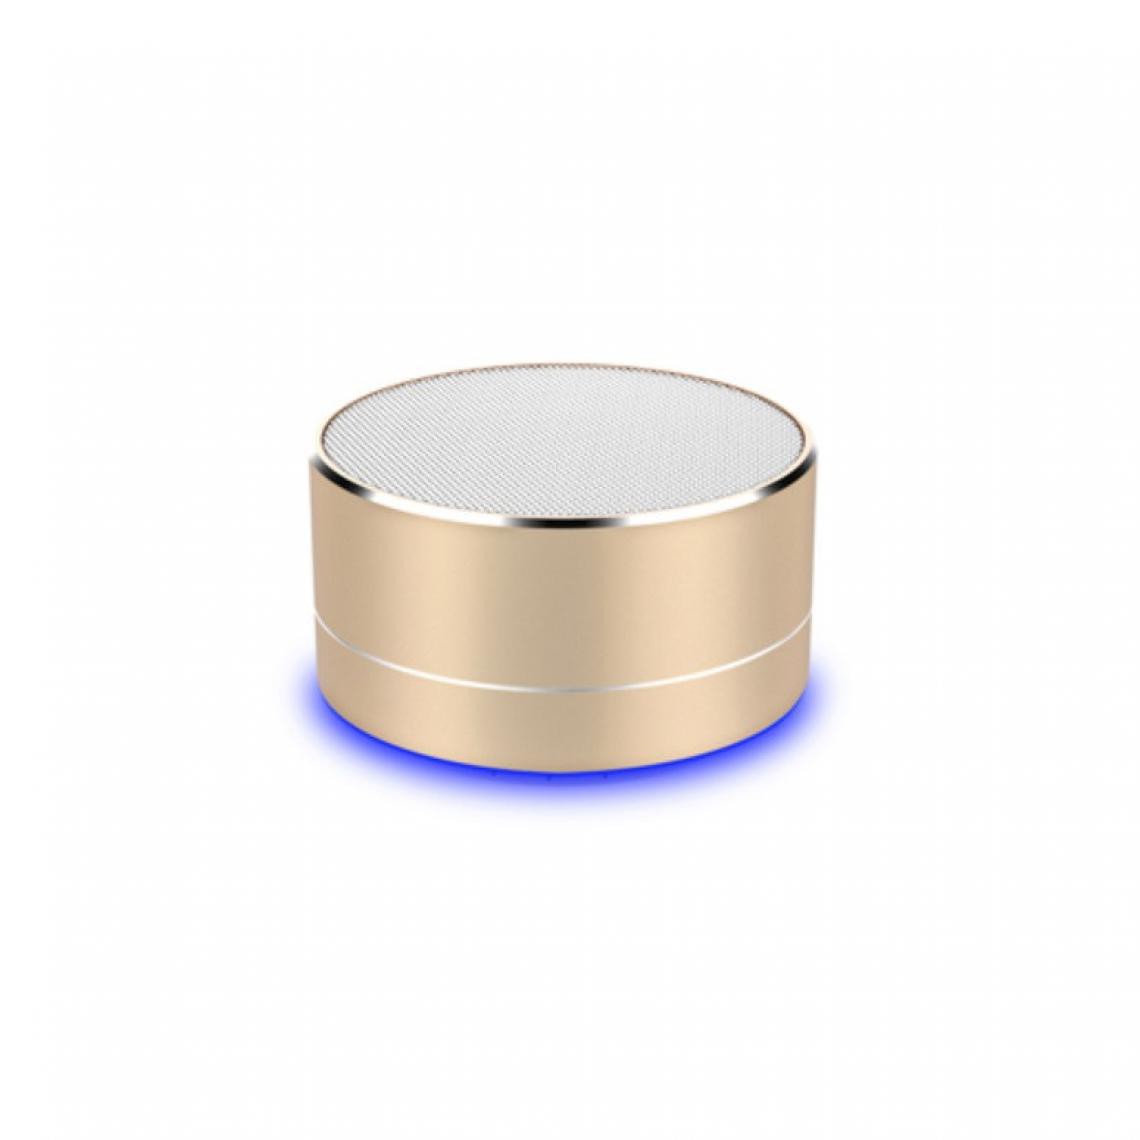 Shot - Enceinte Metal Bluetooth pour "OPPO Find X2 Neo" Smartphone Port USB Carte TF Auxiliaire Haut-Parleur Micro Mini (OR) - Autres accessoires smartphone